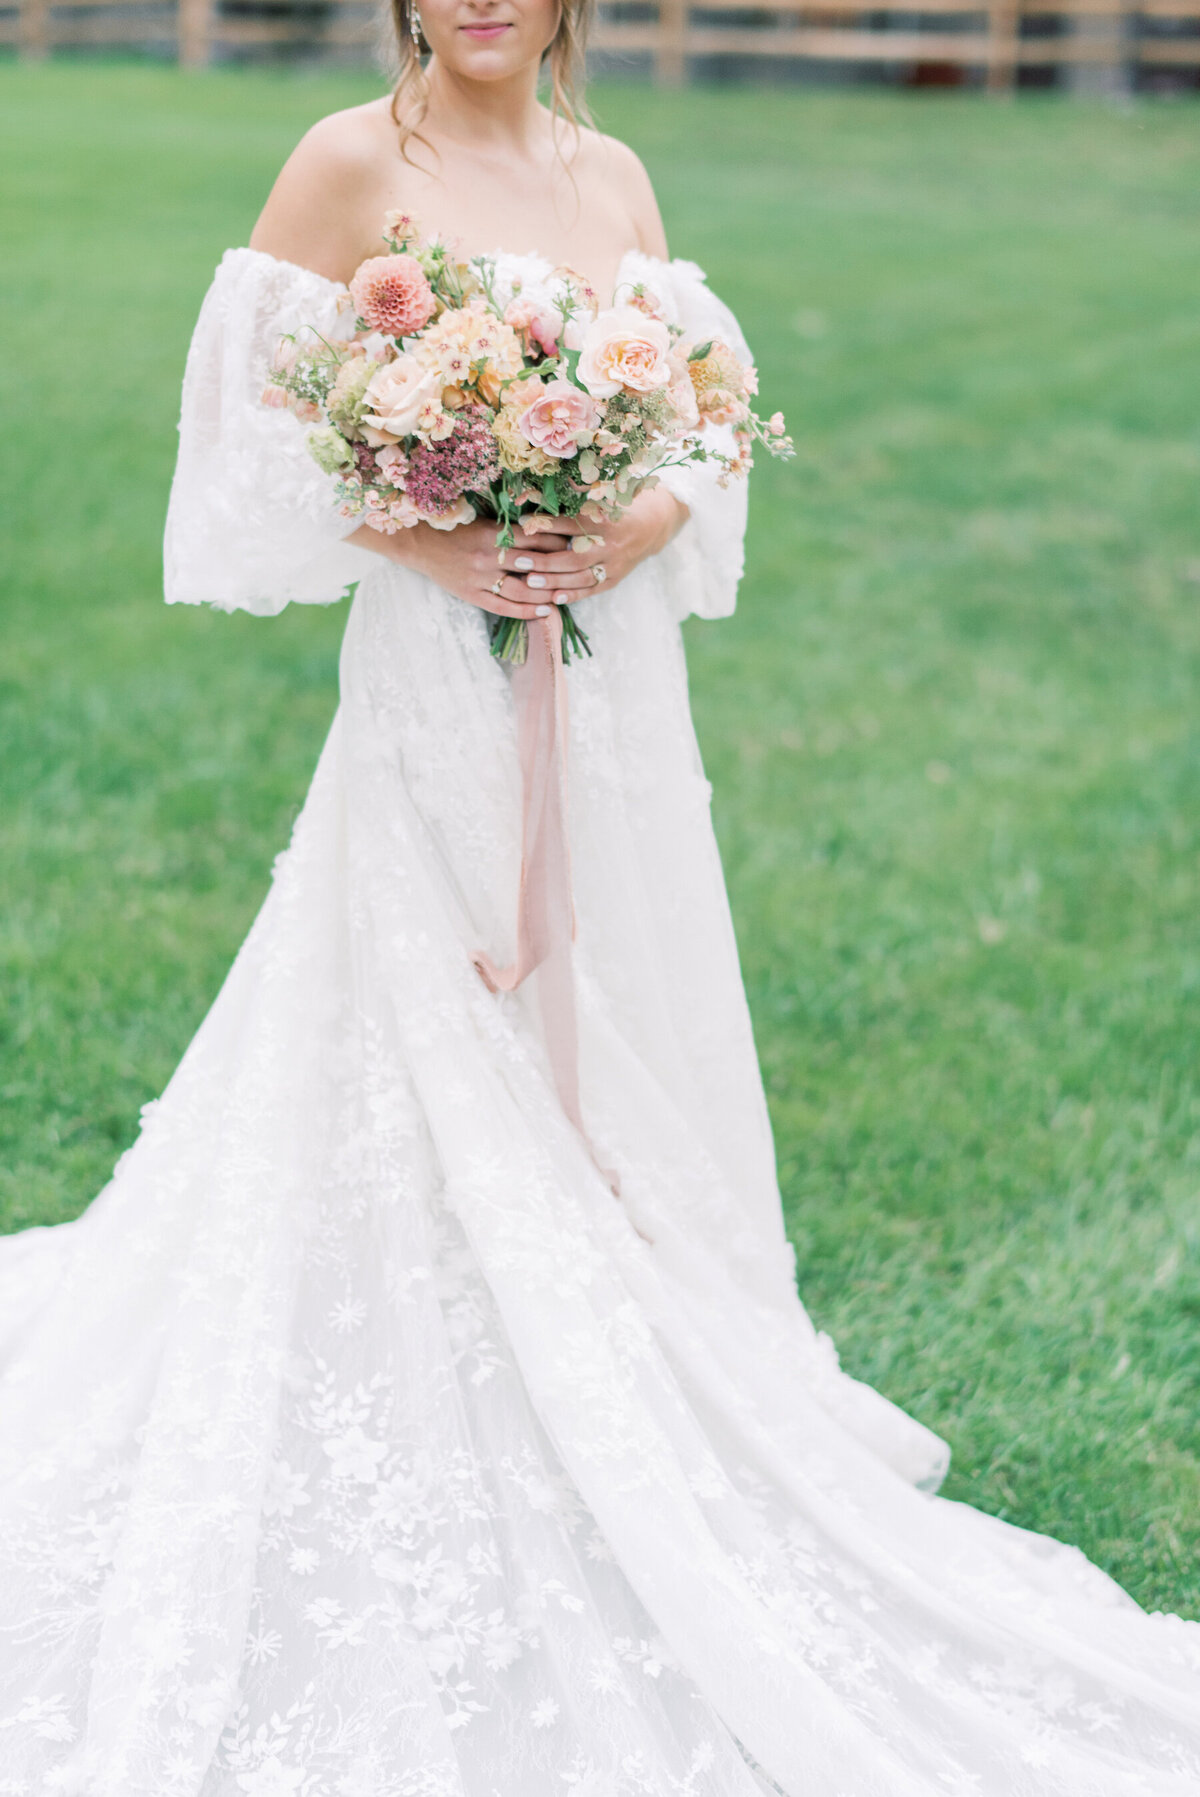 Hartwood-Acres-Wedding-Venue-Vibrant-Fall-Color-Palette-Novalee-Events-Co.-Bride-Romantic-Bridal-Gown-Bouquet